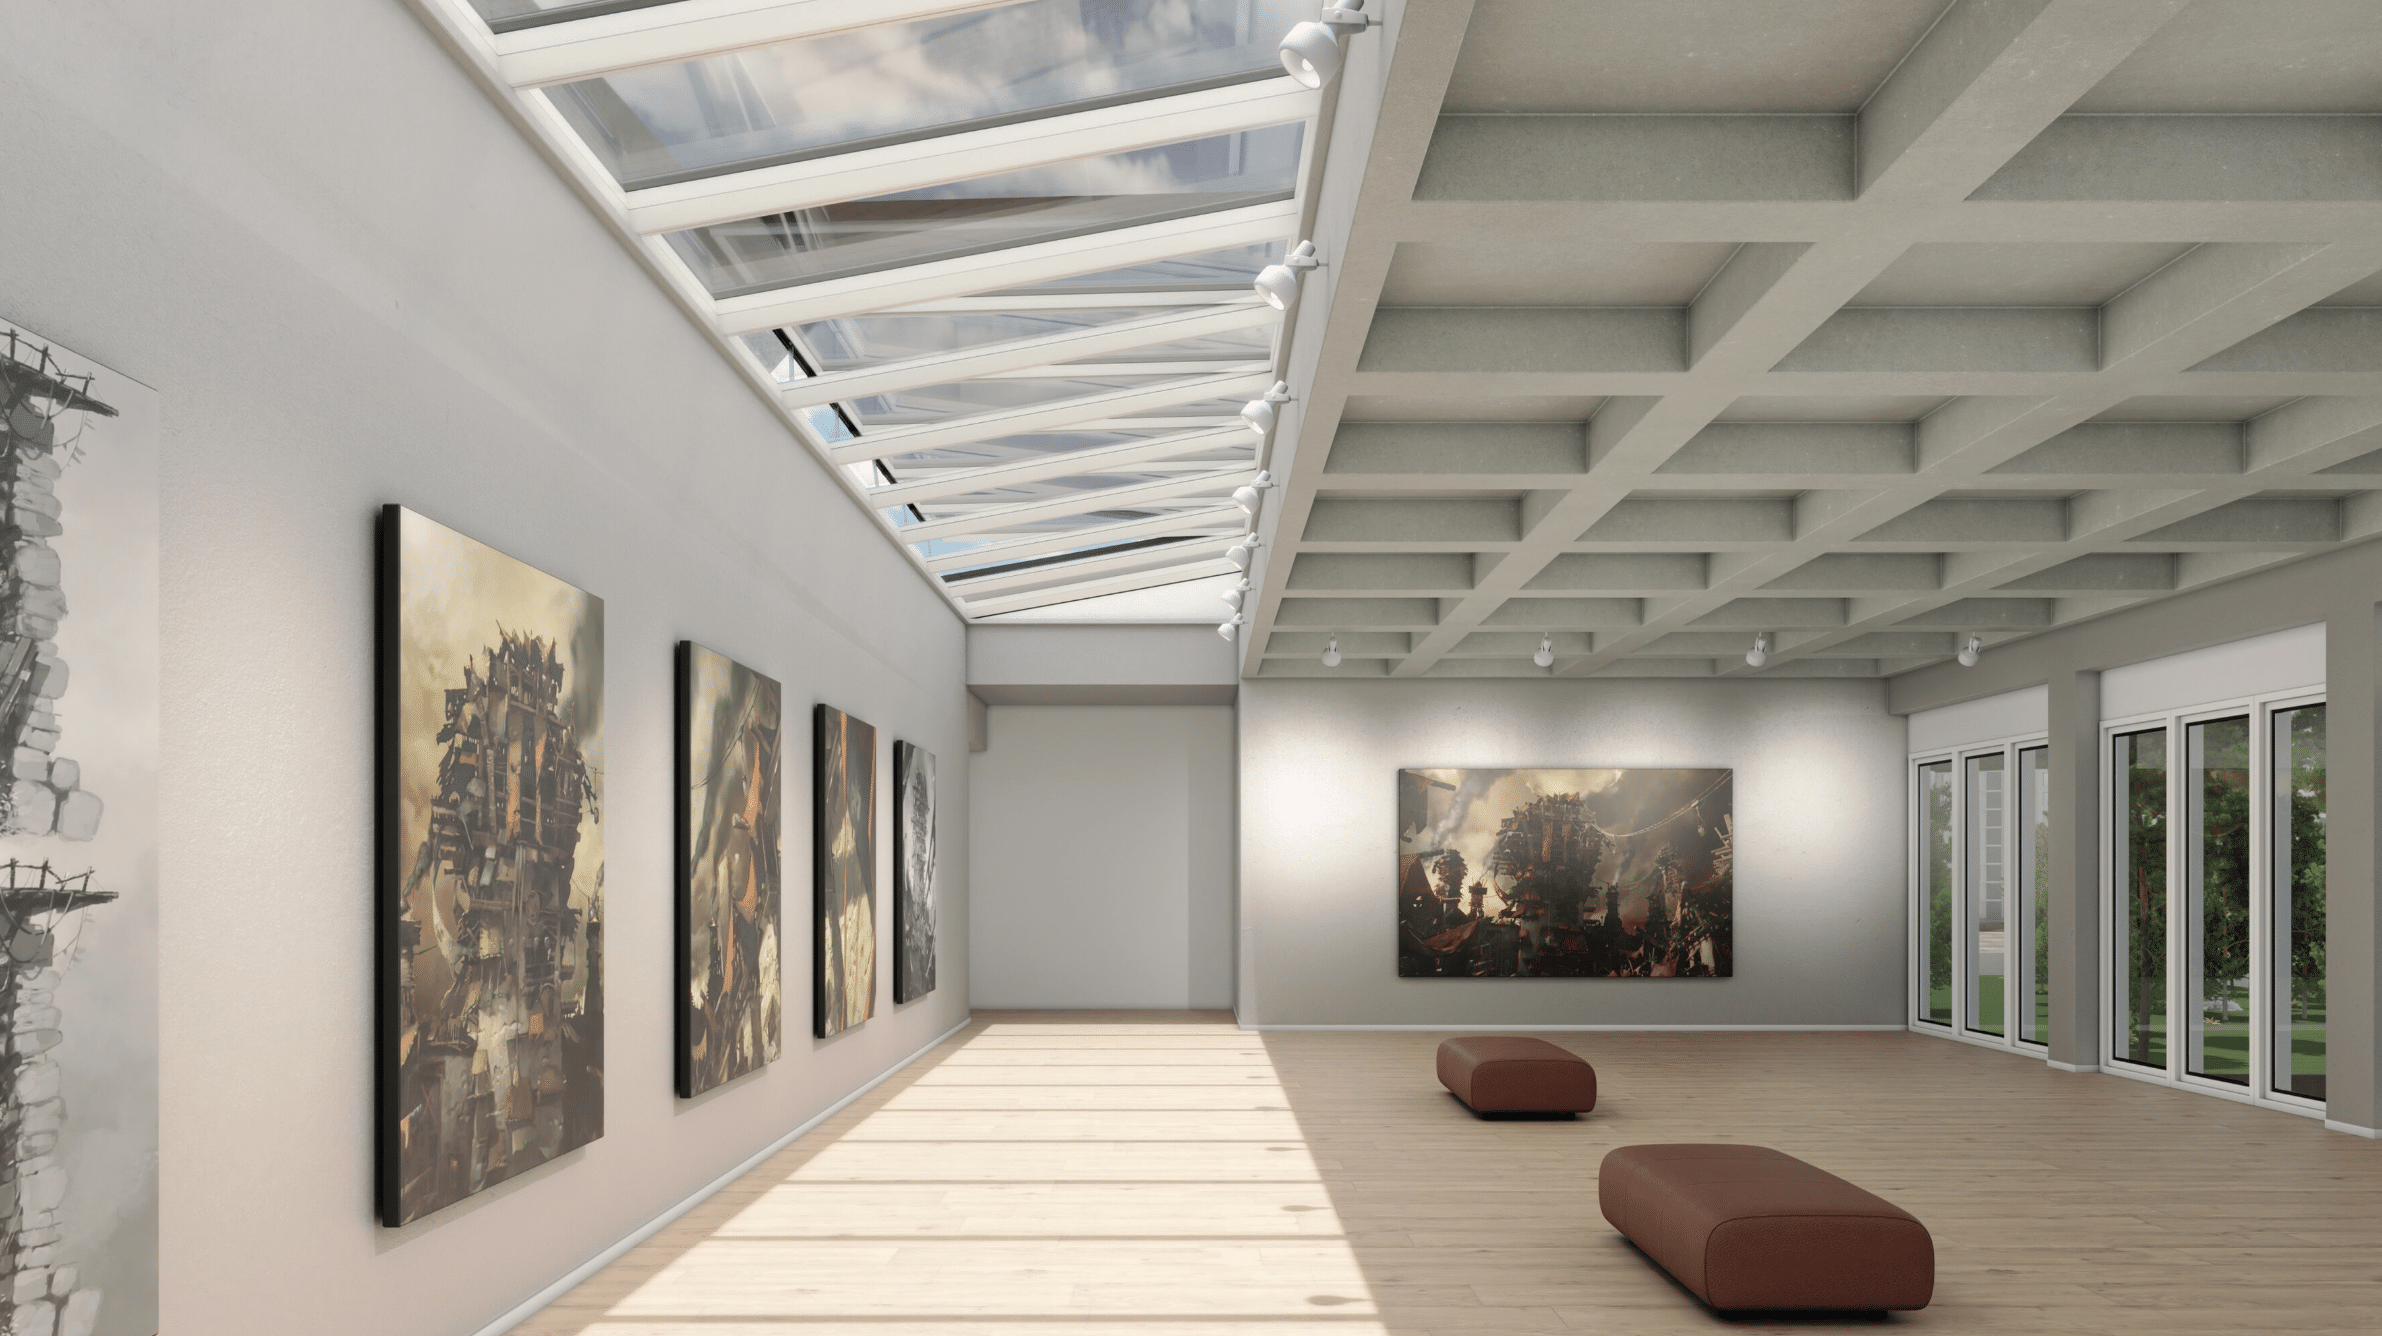 Lamilux zeigt eine Kunstausstellung in einem großen, offenen Raum mit Glasfronten und einem Panoramadach, das für viel Tageslicht sorgt.